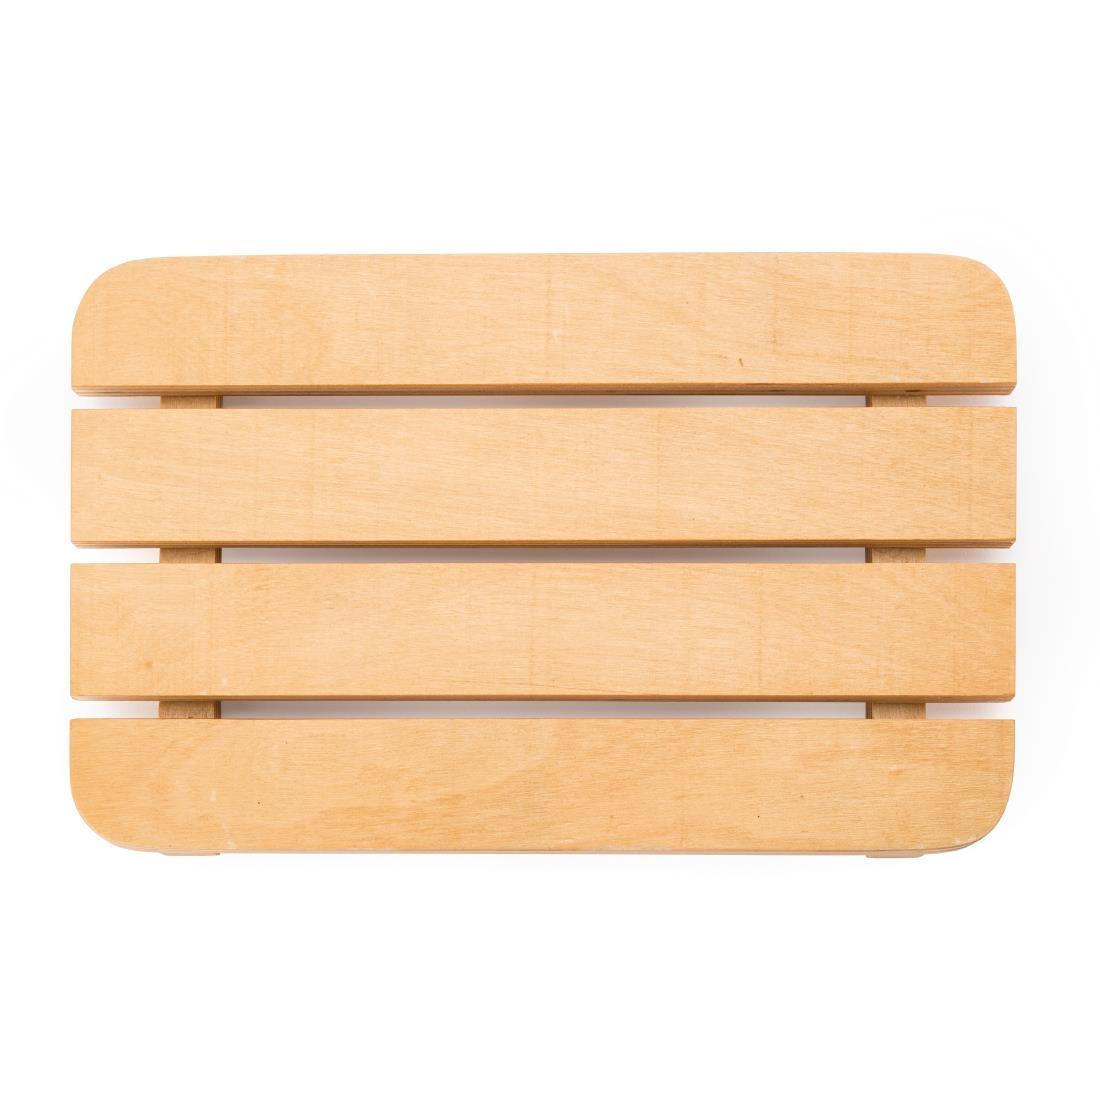 Bolero Wooden Slatted Amenities Tray 180mm (Single) - GR388  - 3